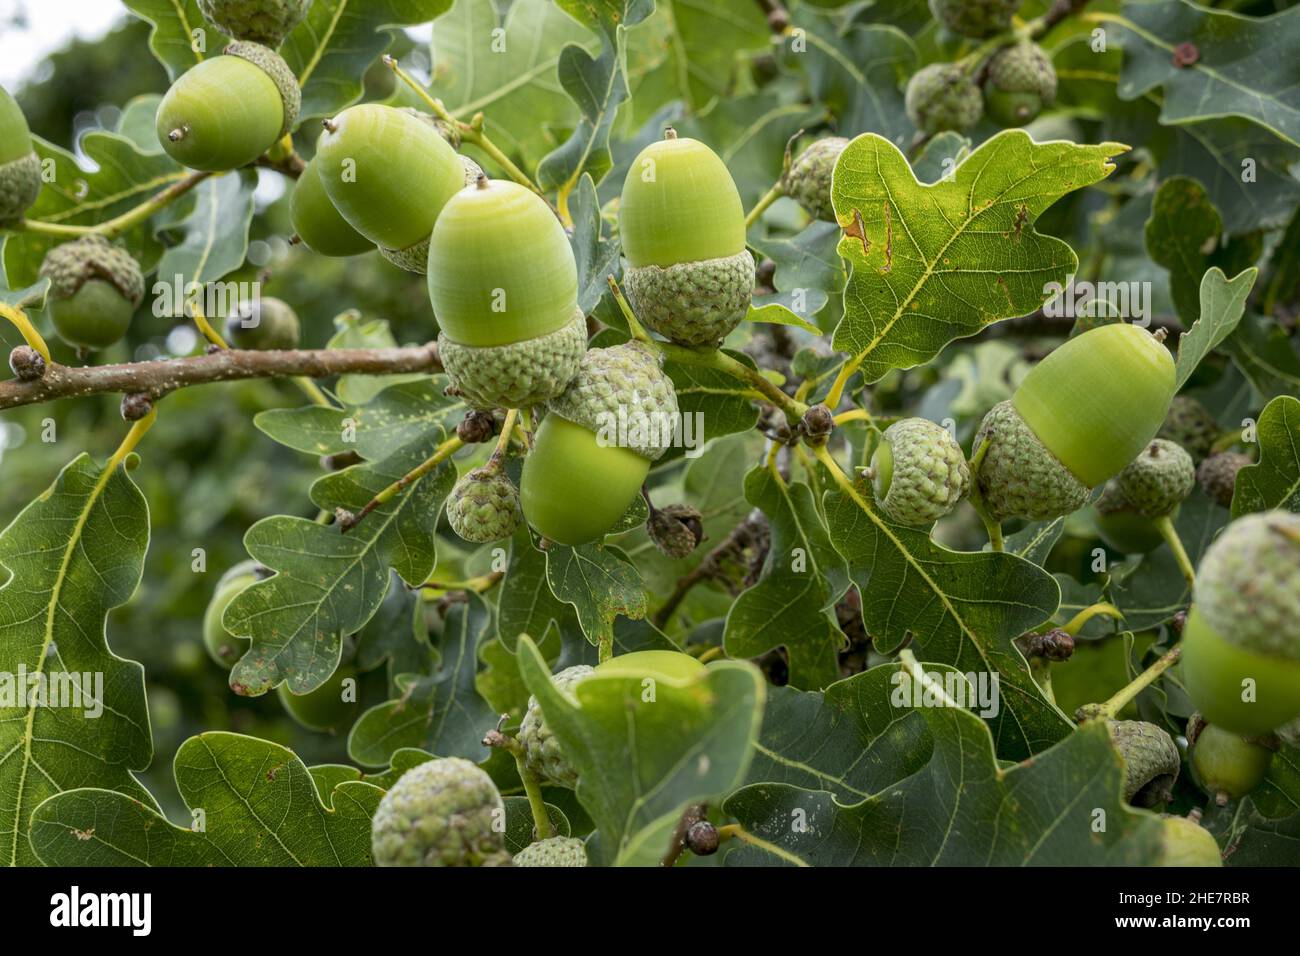 Stieleichel (Quercus robur) Stock Photo